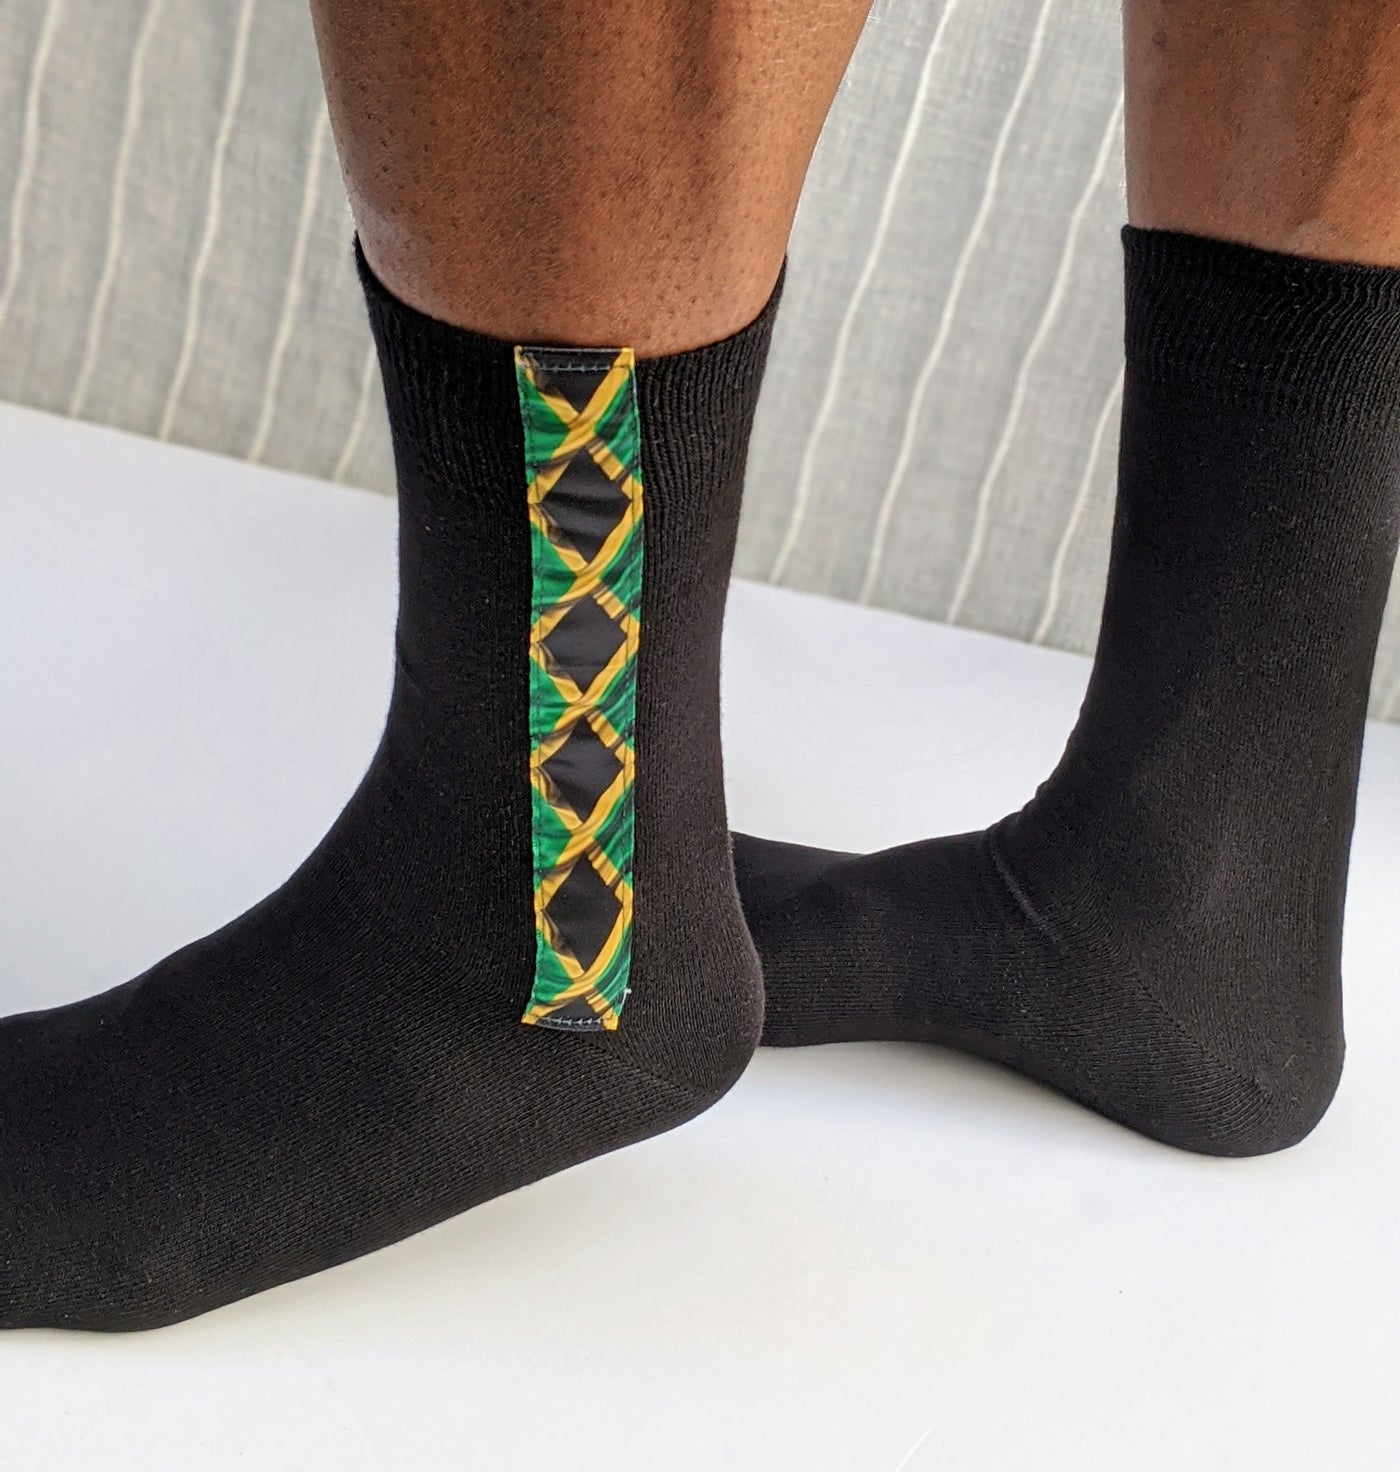 Socks with Jamaica flag